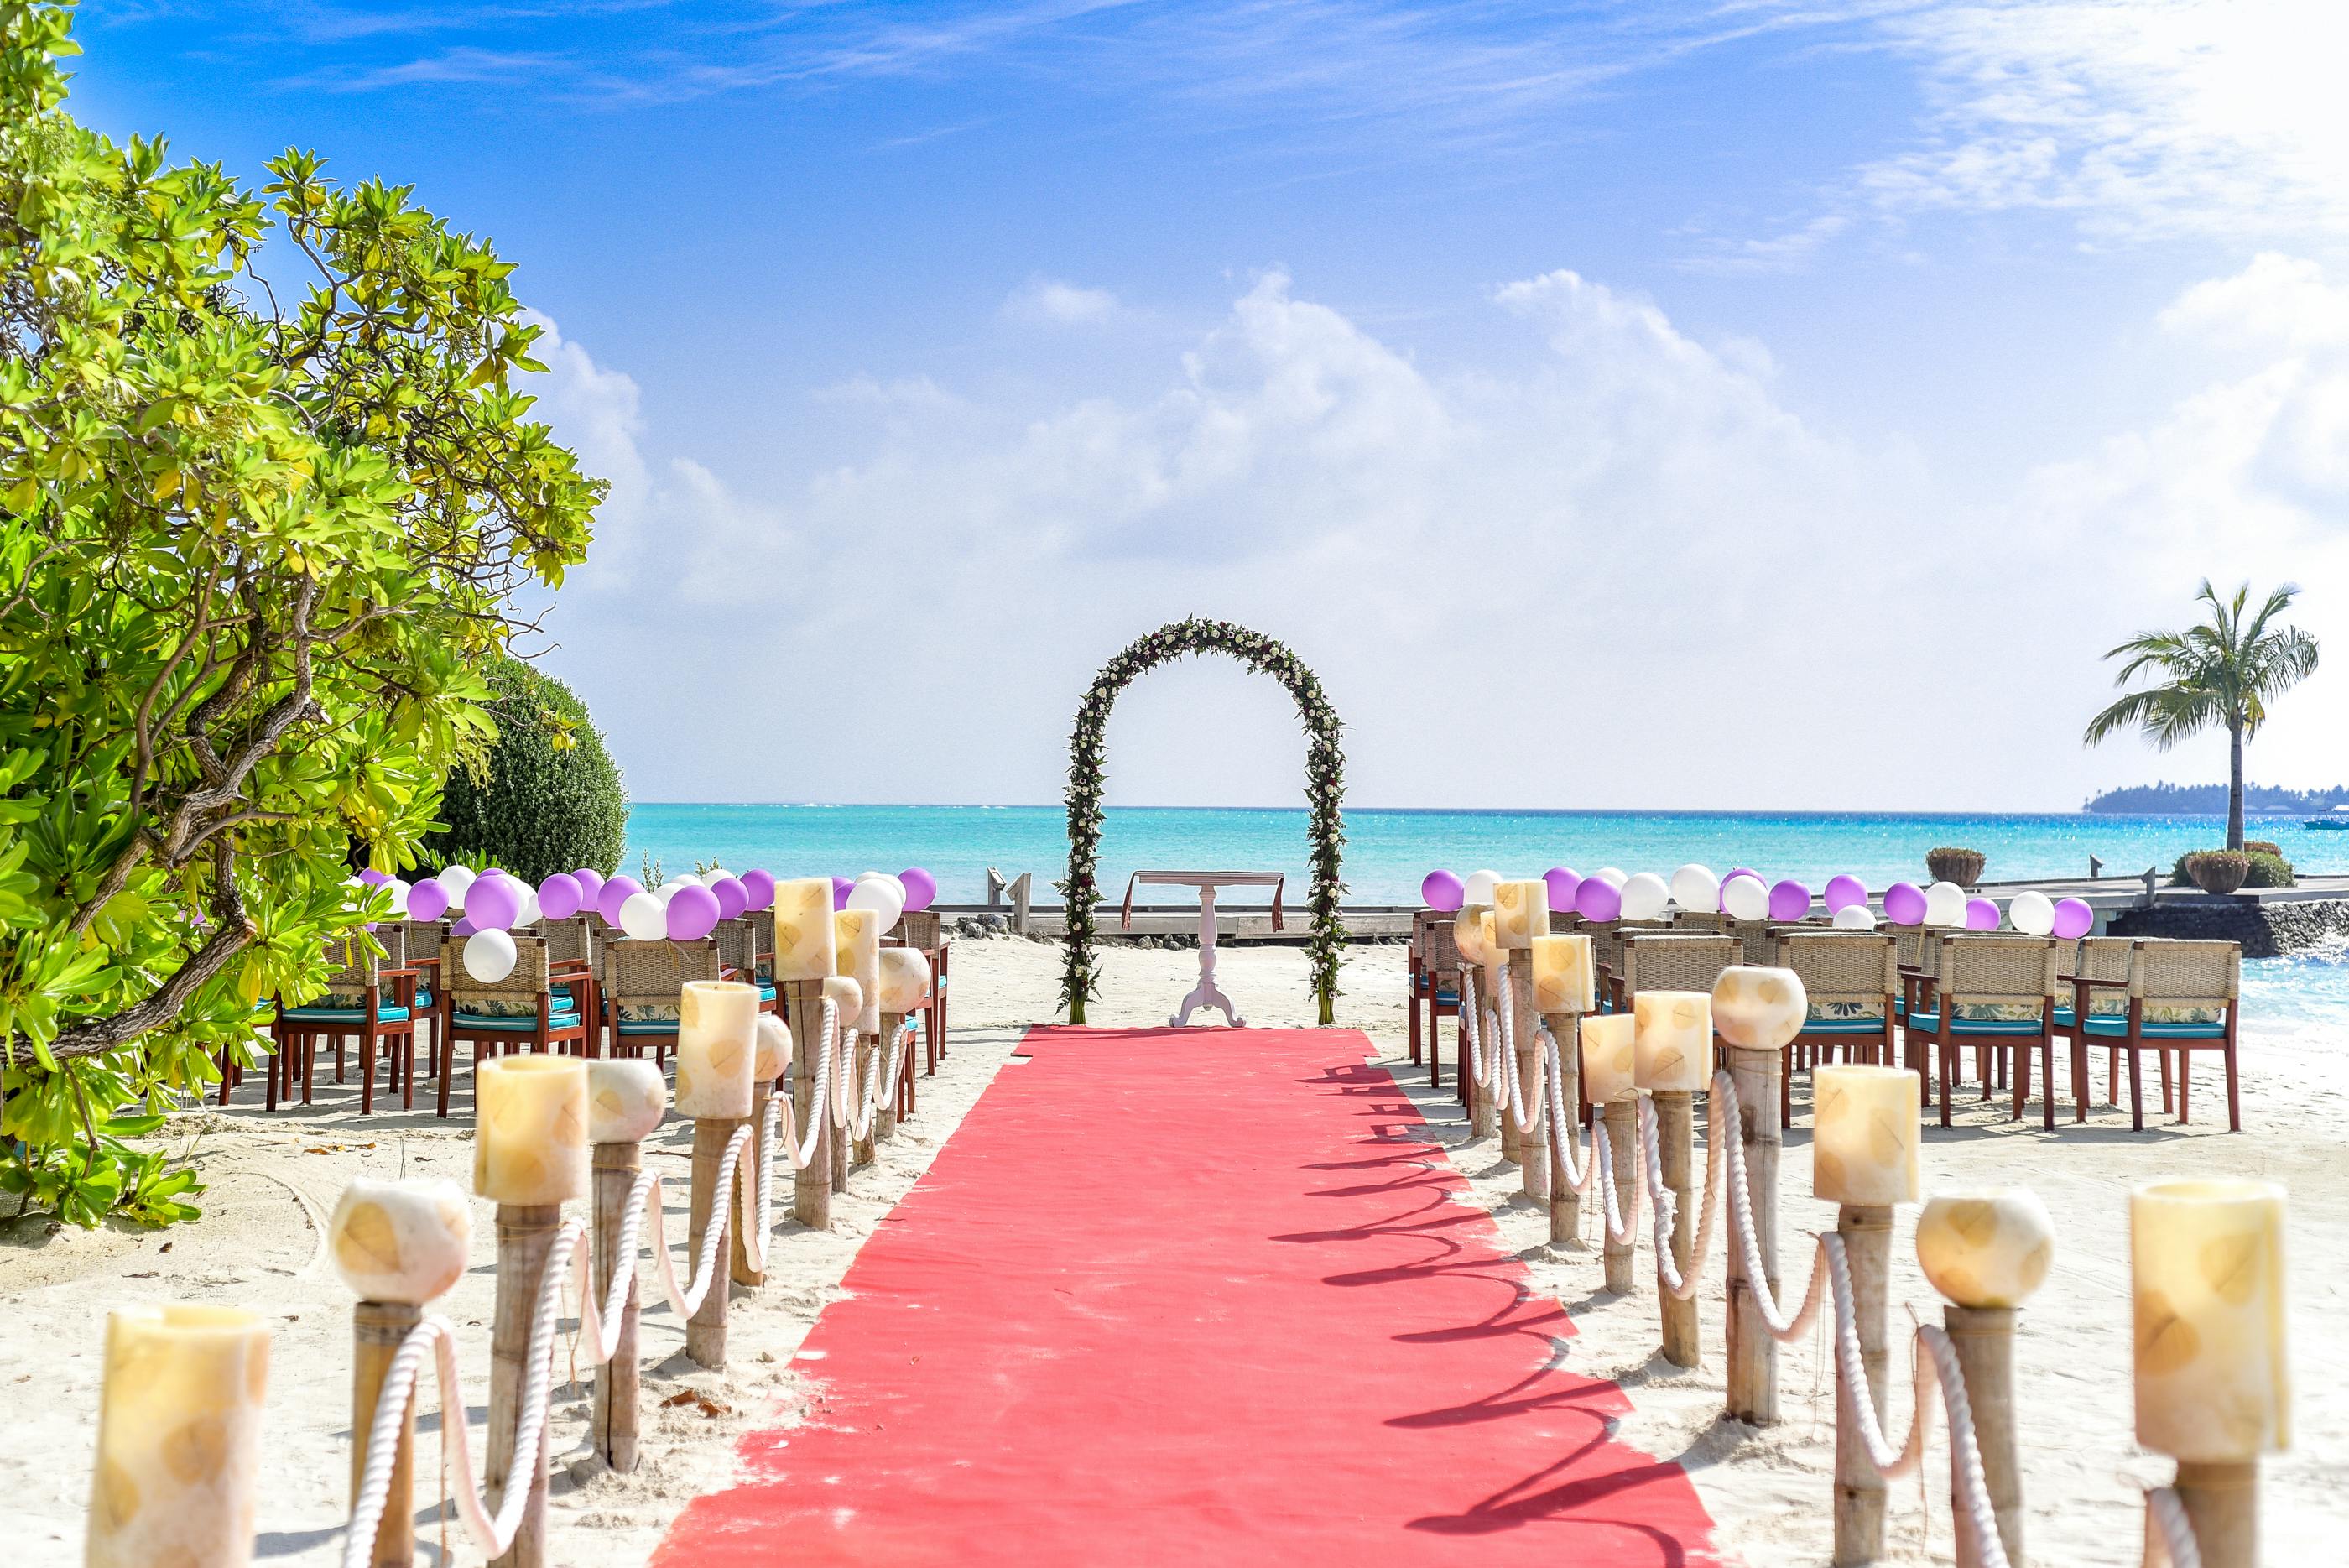 Địa điểm tổ chức đám cưới rất quan trọng để tạo nên không gian lãng mạn và trang trọng cho ngày trọng đại. Những hình ảnh liên quan sẽ giúp bạn chọn lựa nơi phù hợp cho đám cưới của mình.